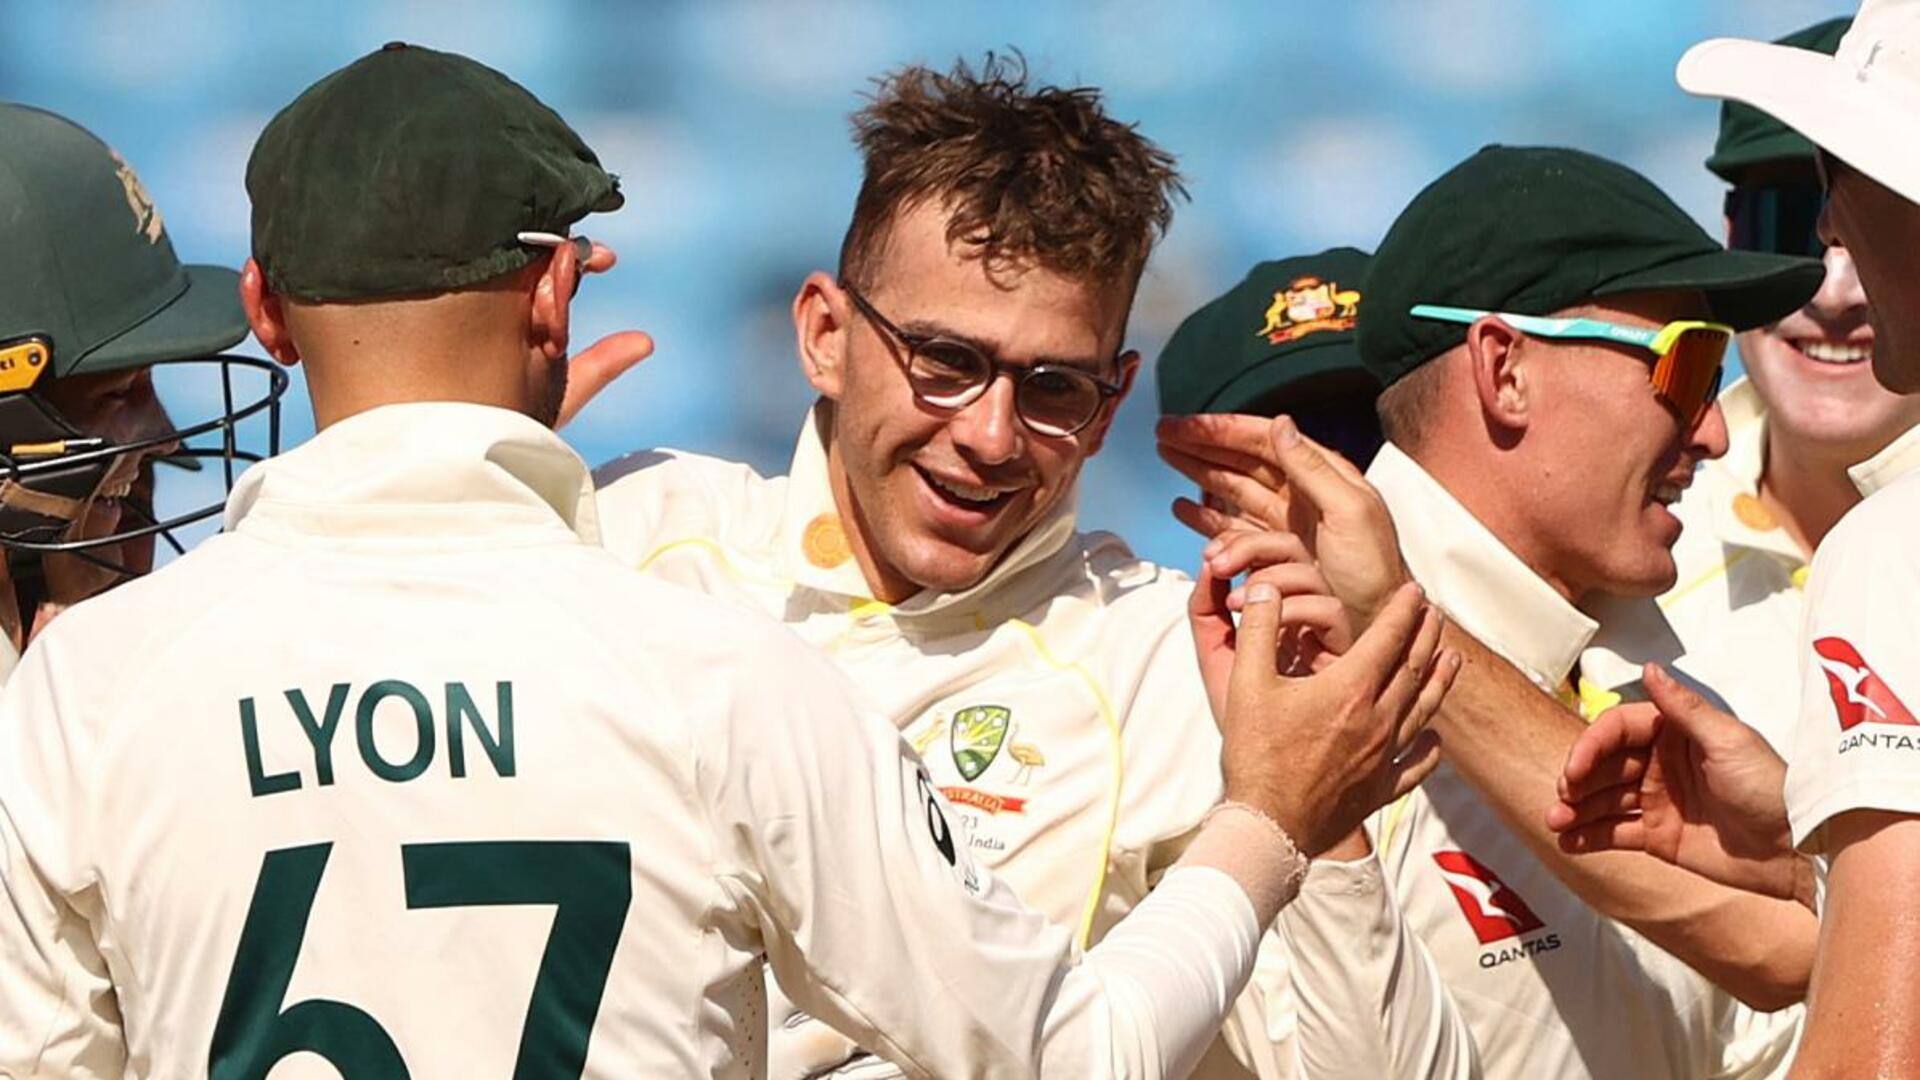 बॉर्डर-गावस्कर ट्रॉफी: ऑस्ट्रेलिया के स्पिनर टॉड मर्फी ने चोट के साथ खेला था दूसरा टेस्ट